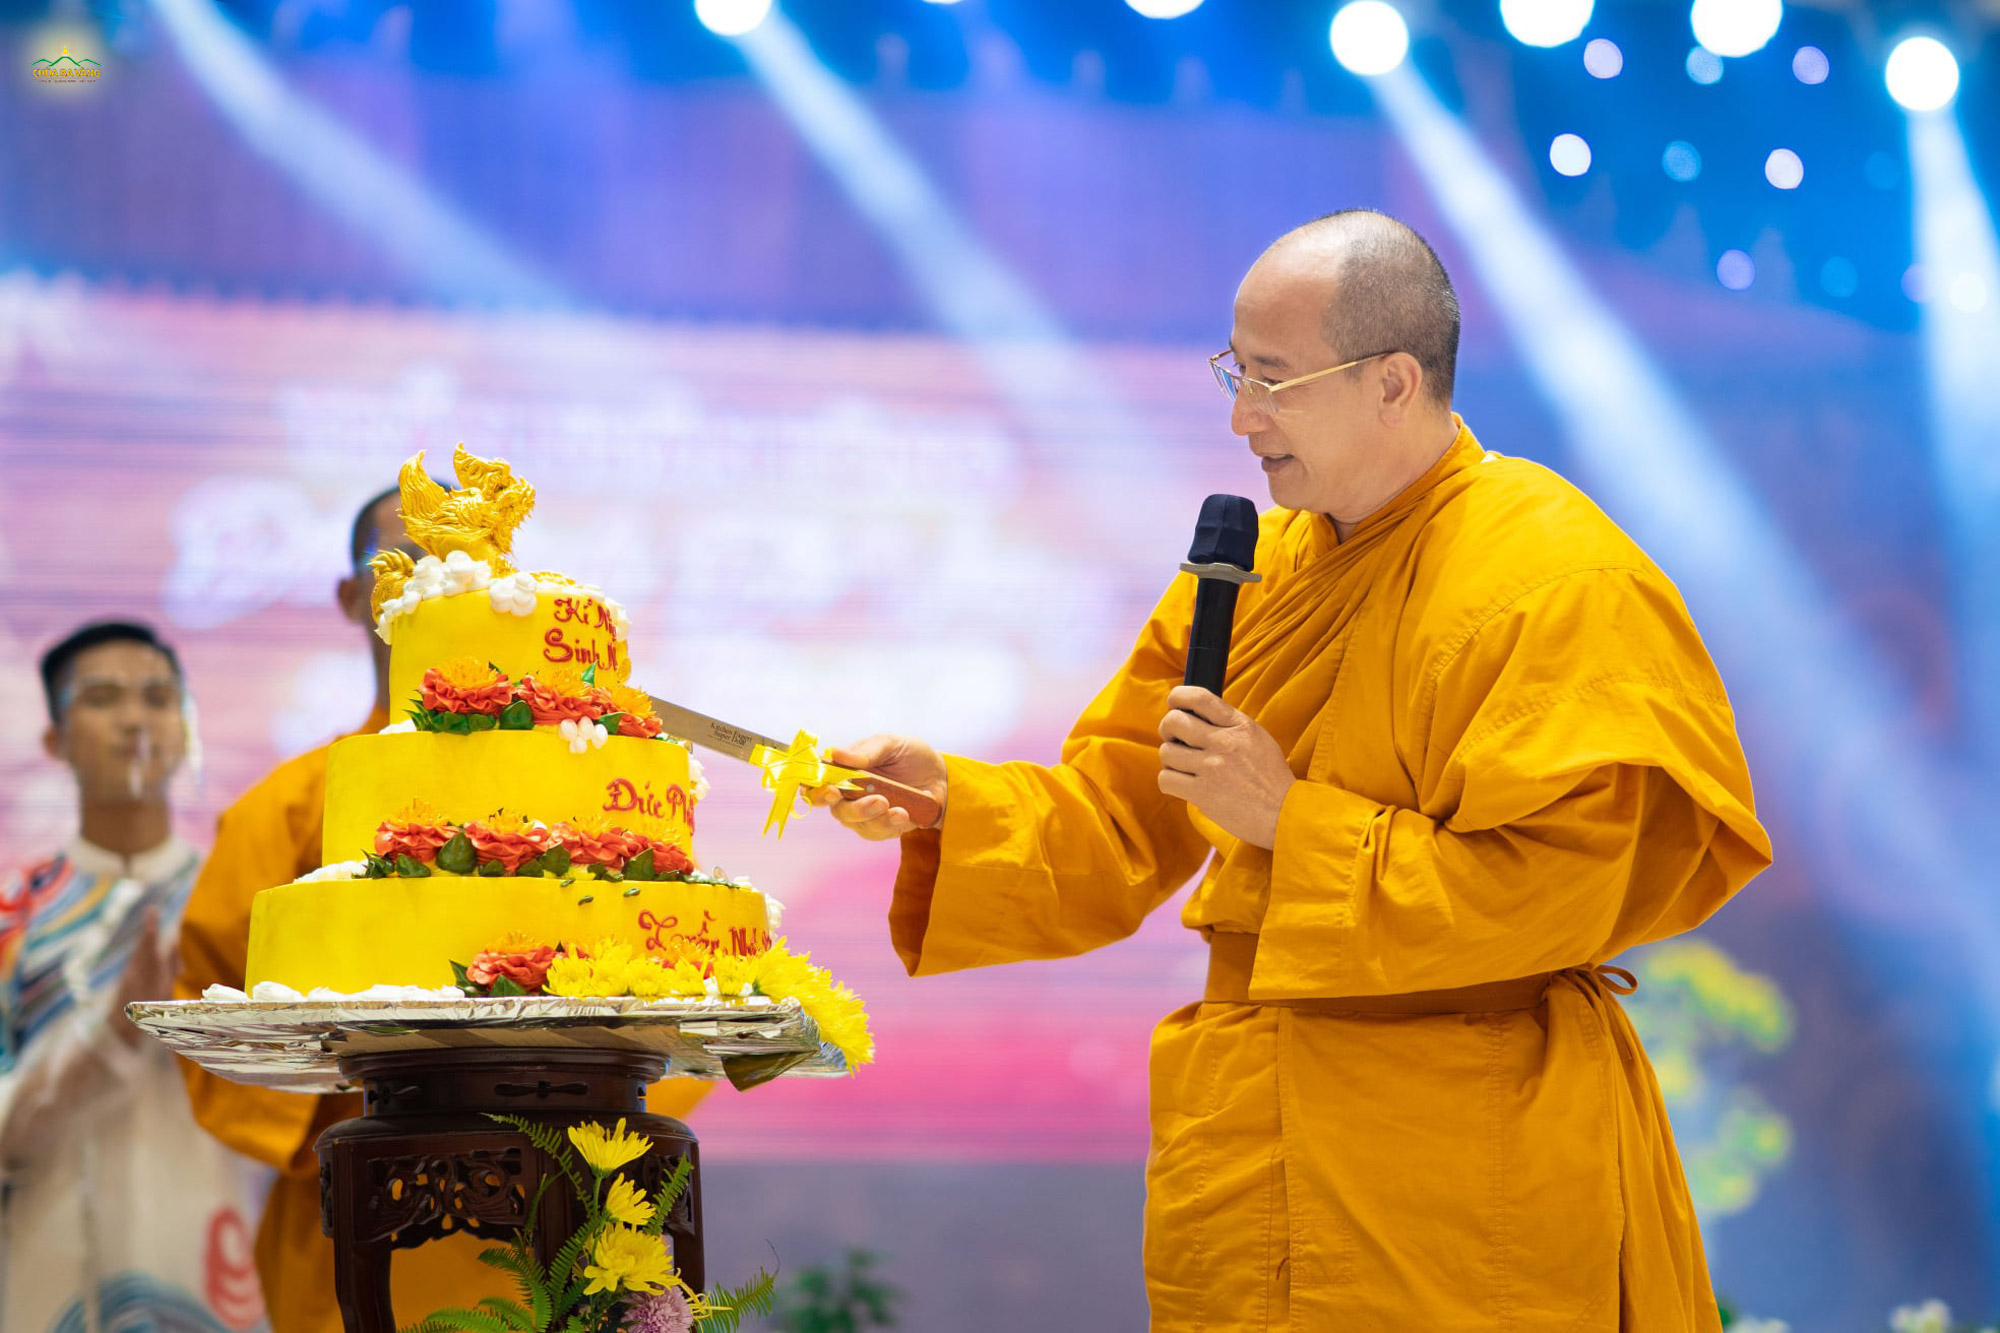   Sư Phụ Thích Trúc Thái Minh cắt bánh kỷ niệm sinh nhật Phật Hoàng Trần Nhân Tông làm bốn phần tượng trưng cho bốn chân lý Đức Phật đã khai ngộ đồng thời cũng là mong nguyện cho bốn phương đều được hòa hợp.  